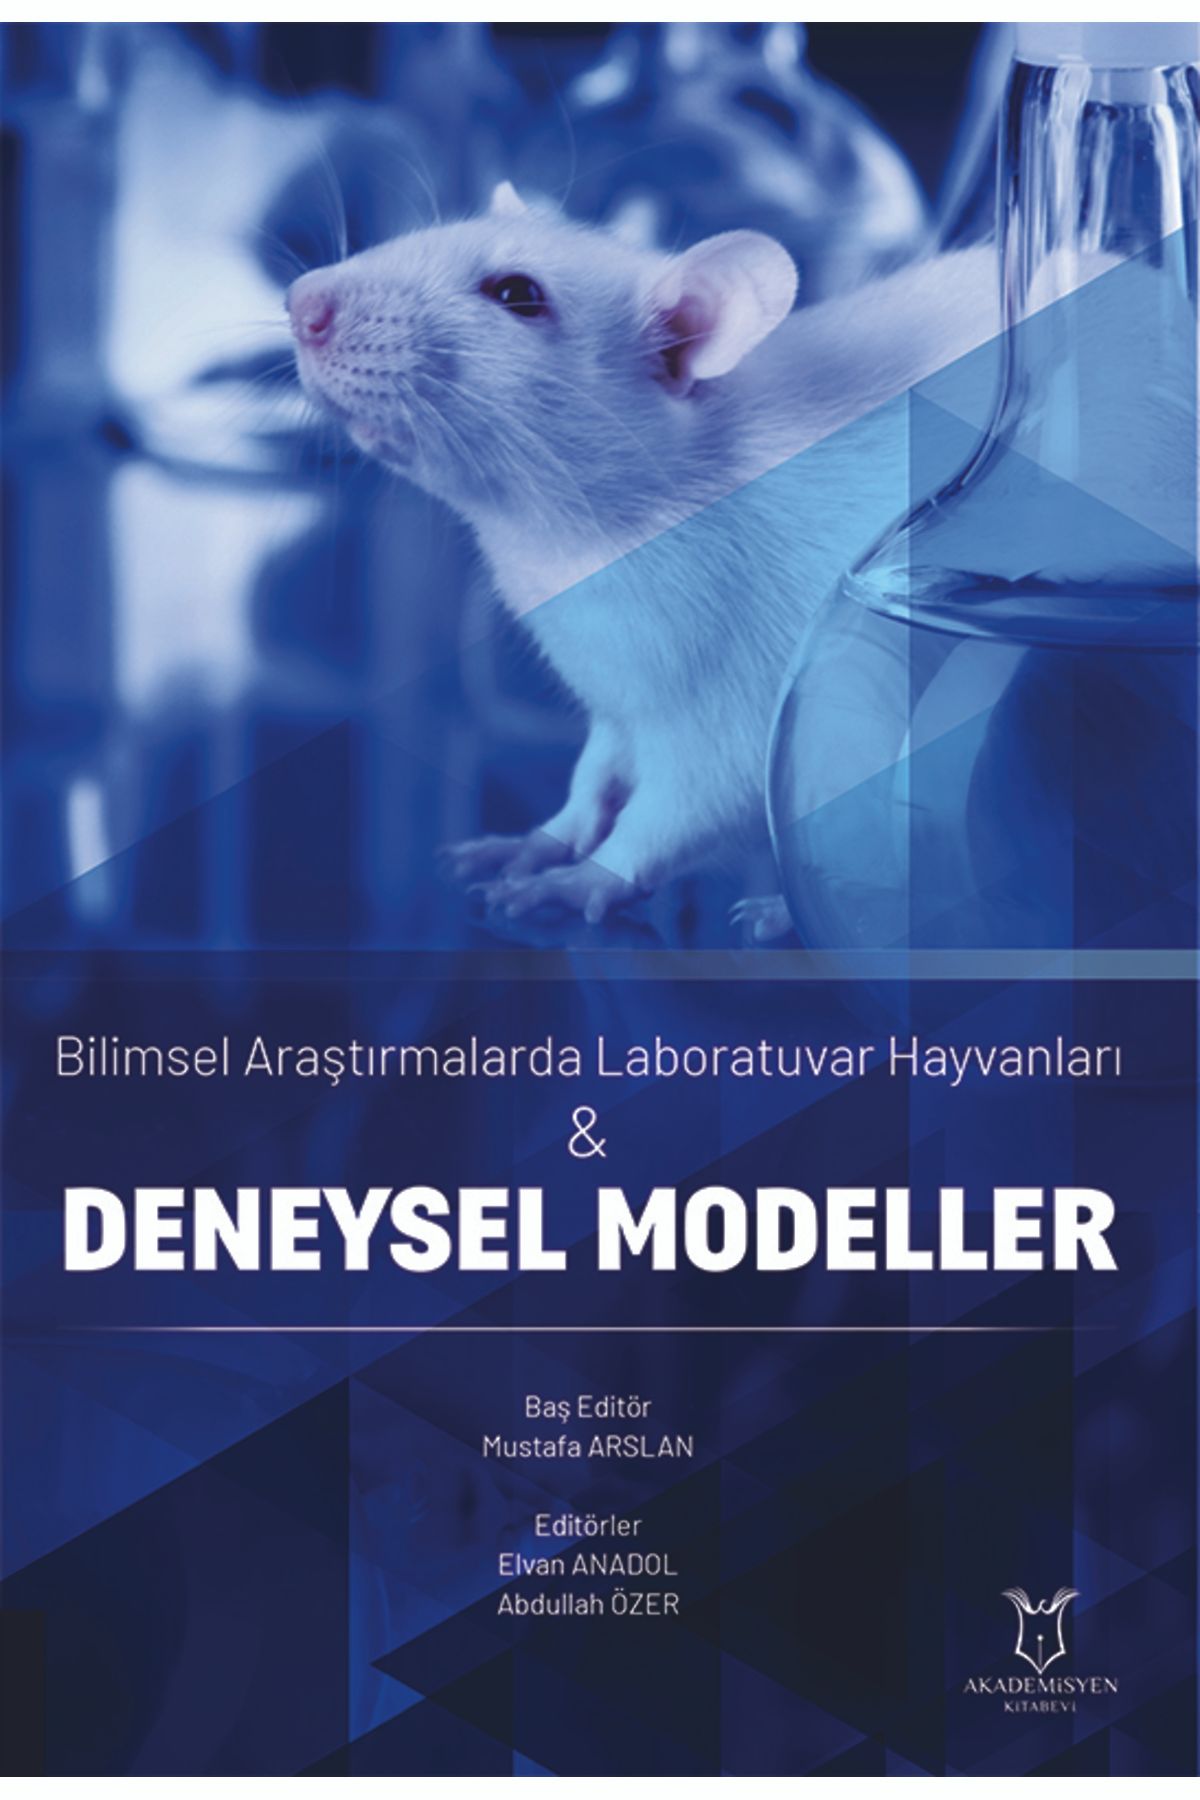 Akademisyen Kitabevi Bilimsel Araştırmalarda Laboratuvar Hayvanları & Deneysel Modeller